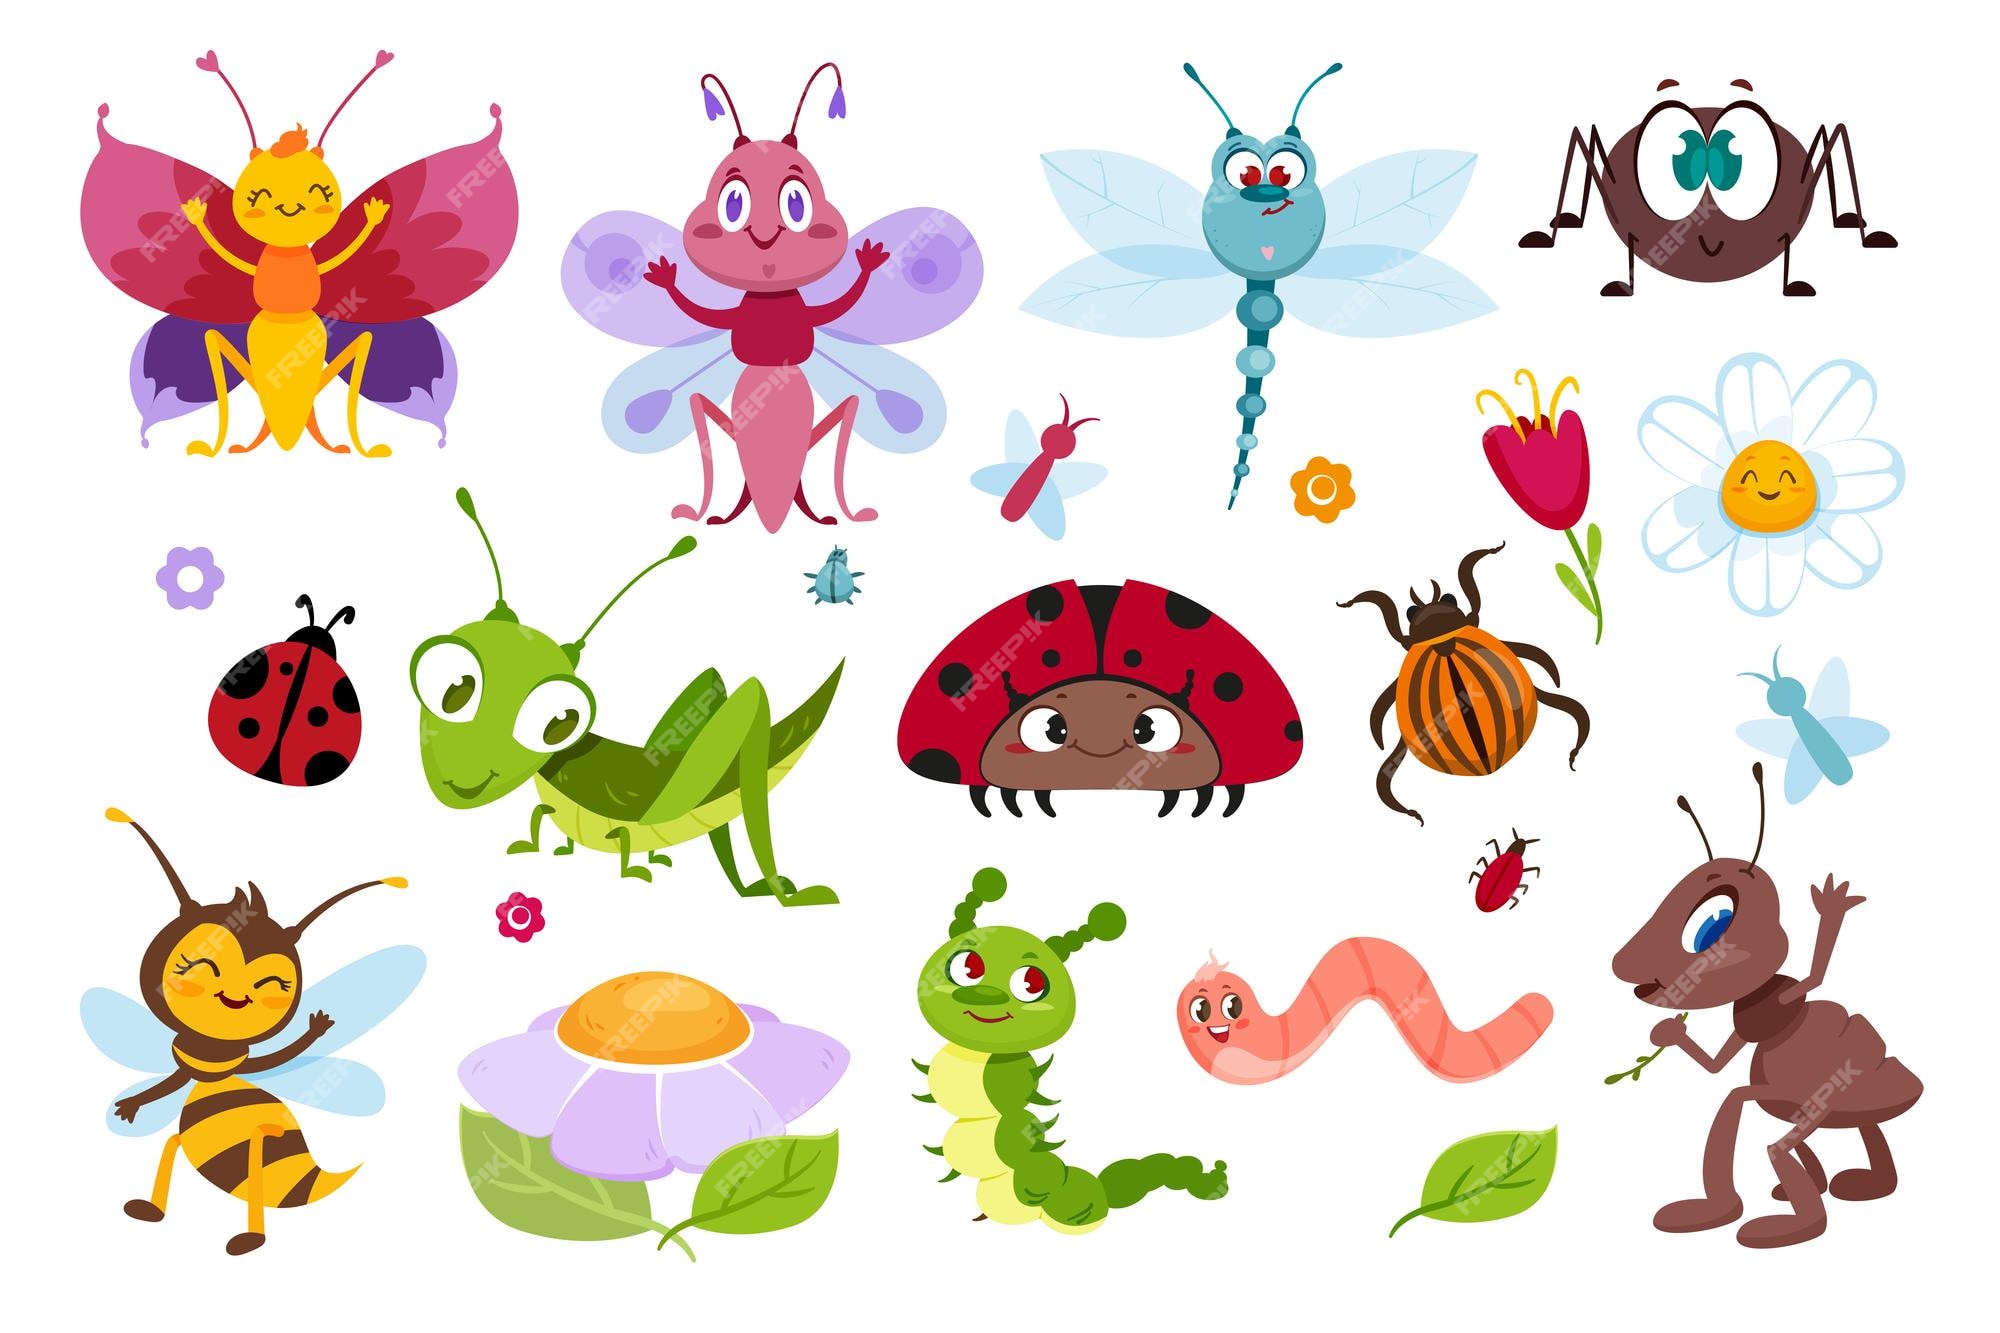 Cartoon Bugs Images - Free Download on Freepik